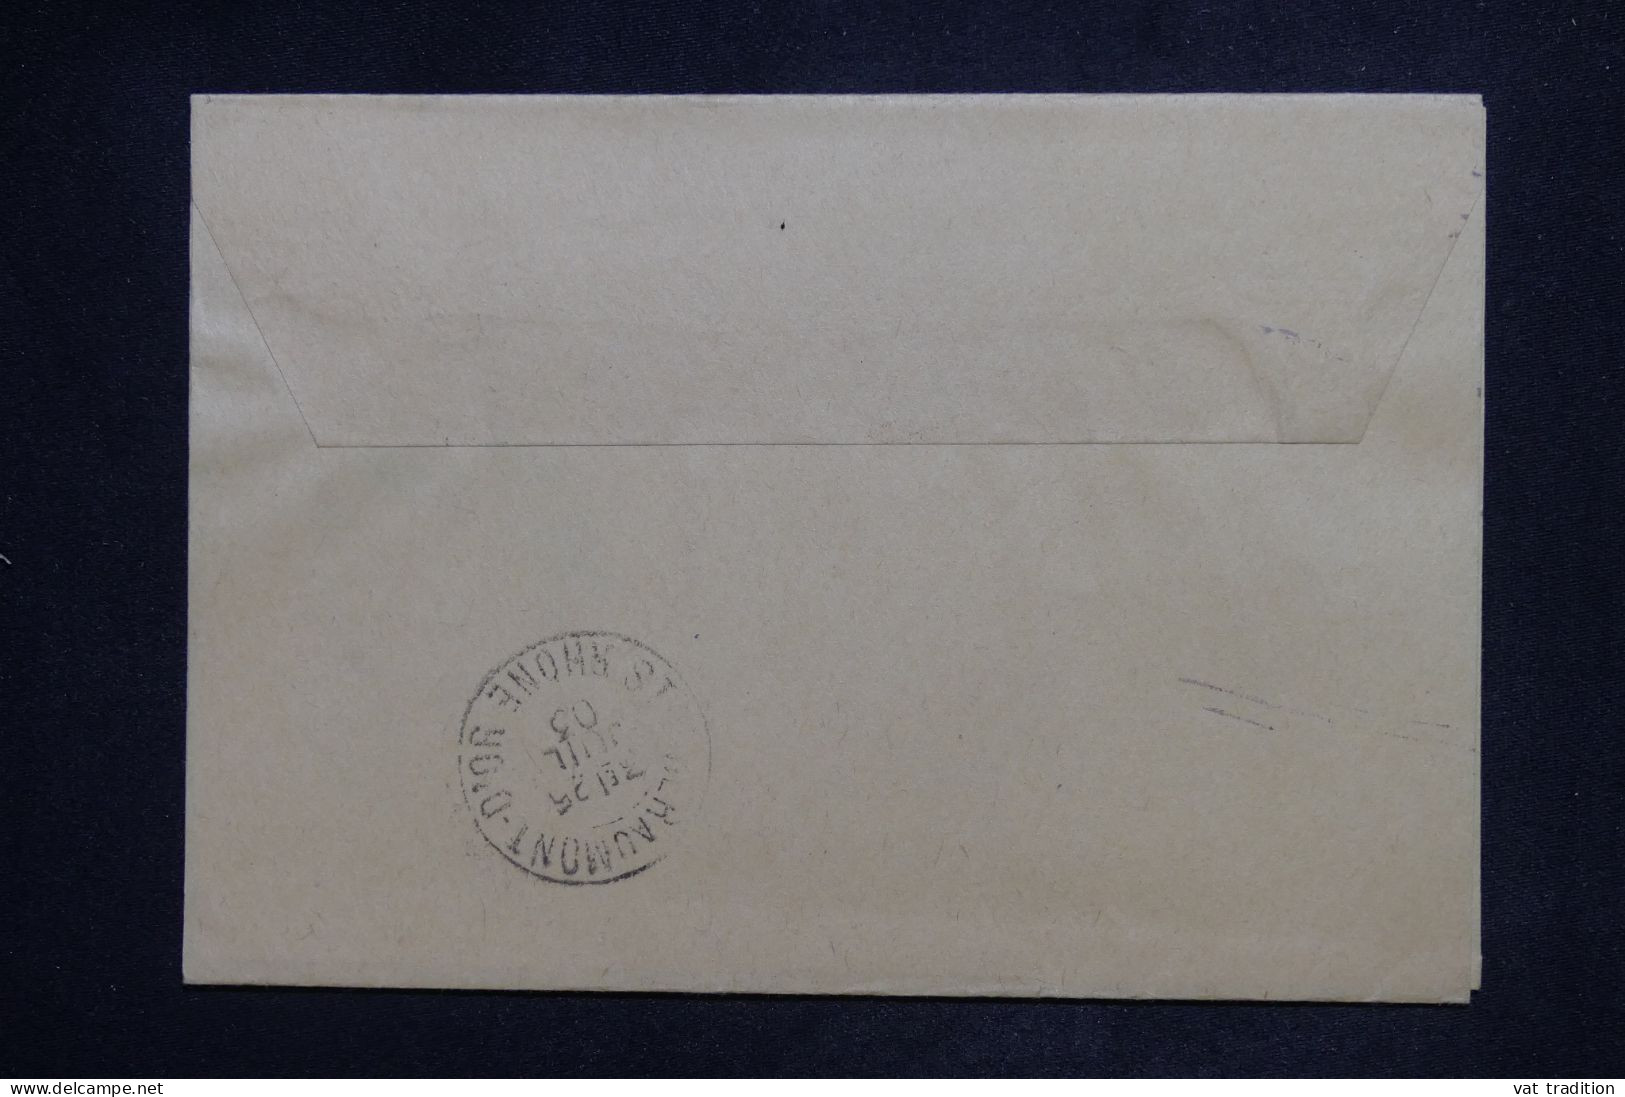 ROYAUME UNI - Entier Postal De Londres Pour La France En 1903 - L 151513 - Interi Postali